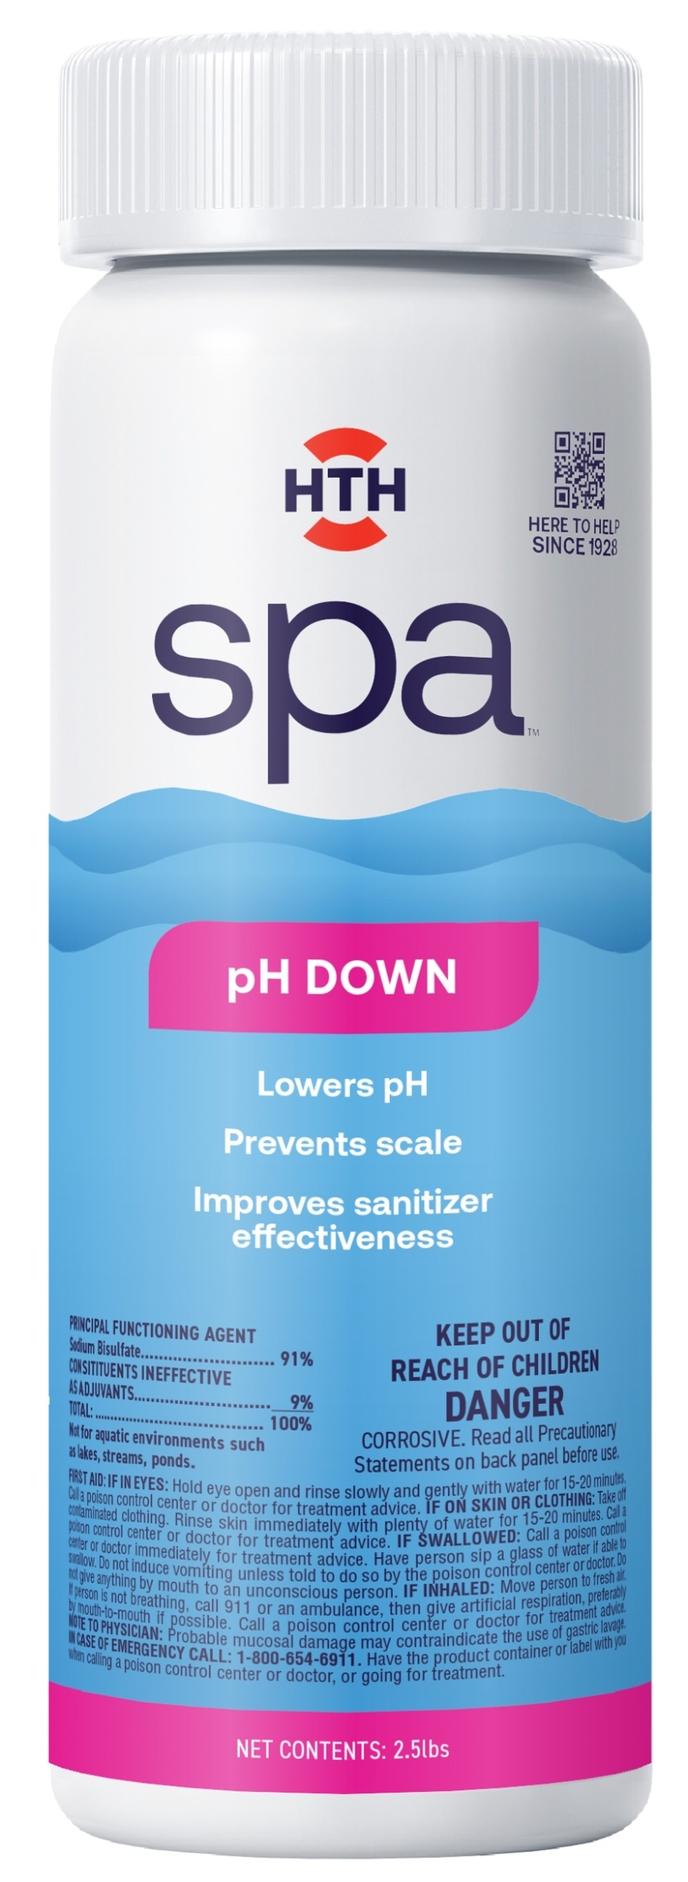 HTH Spa pH Down 2.5